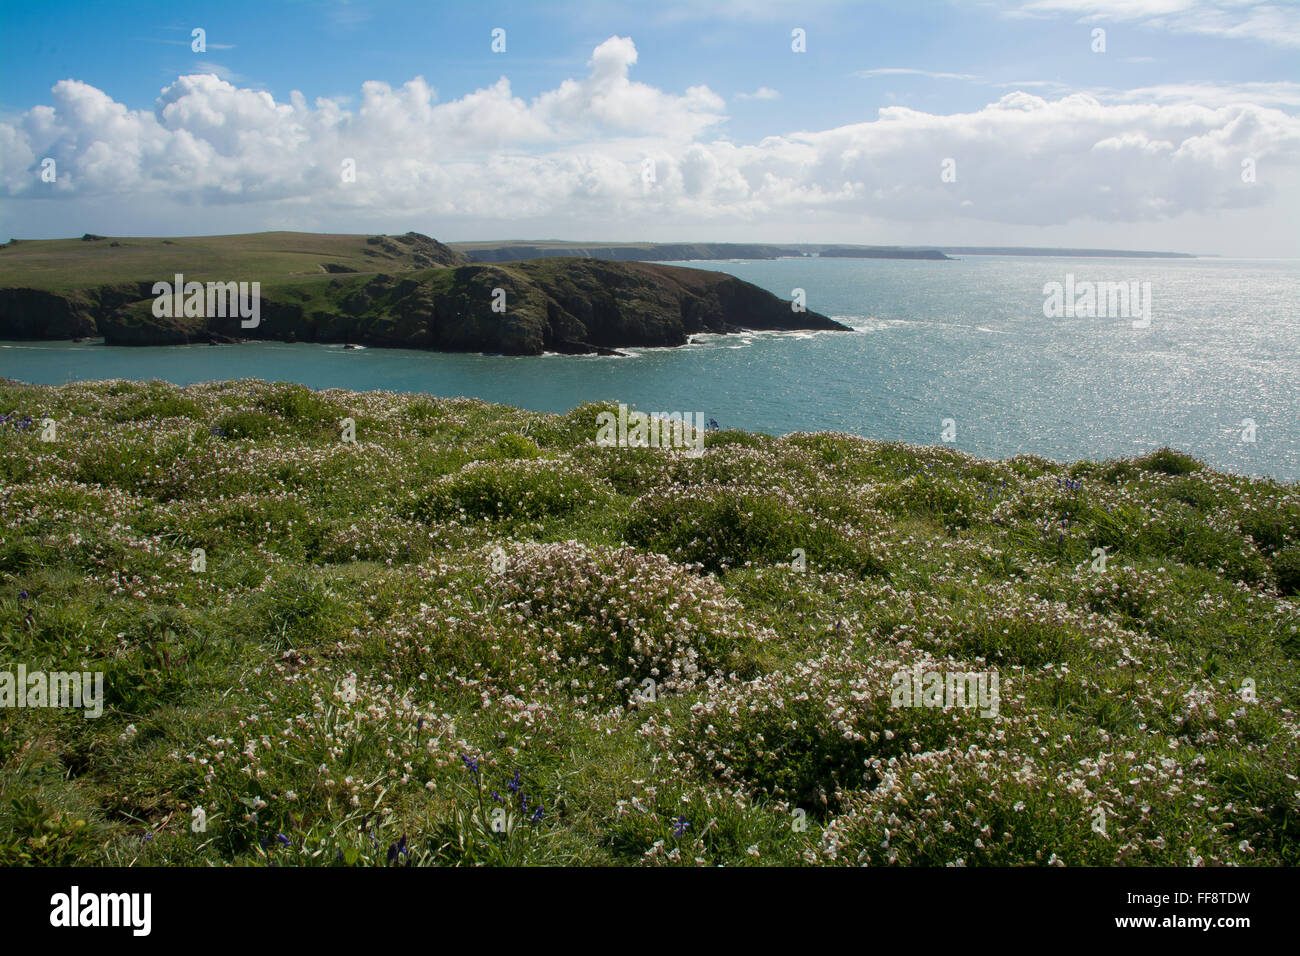 L'île de Skomer tapissées de fleurs sauvages dans la silène Galles Pembrokeshire Banque D'Images